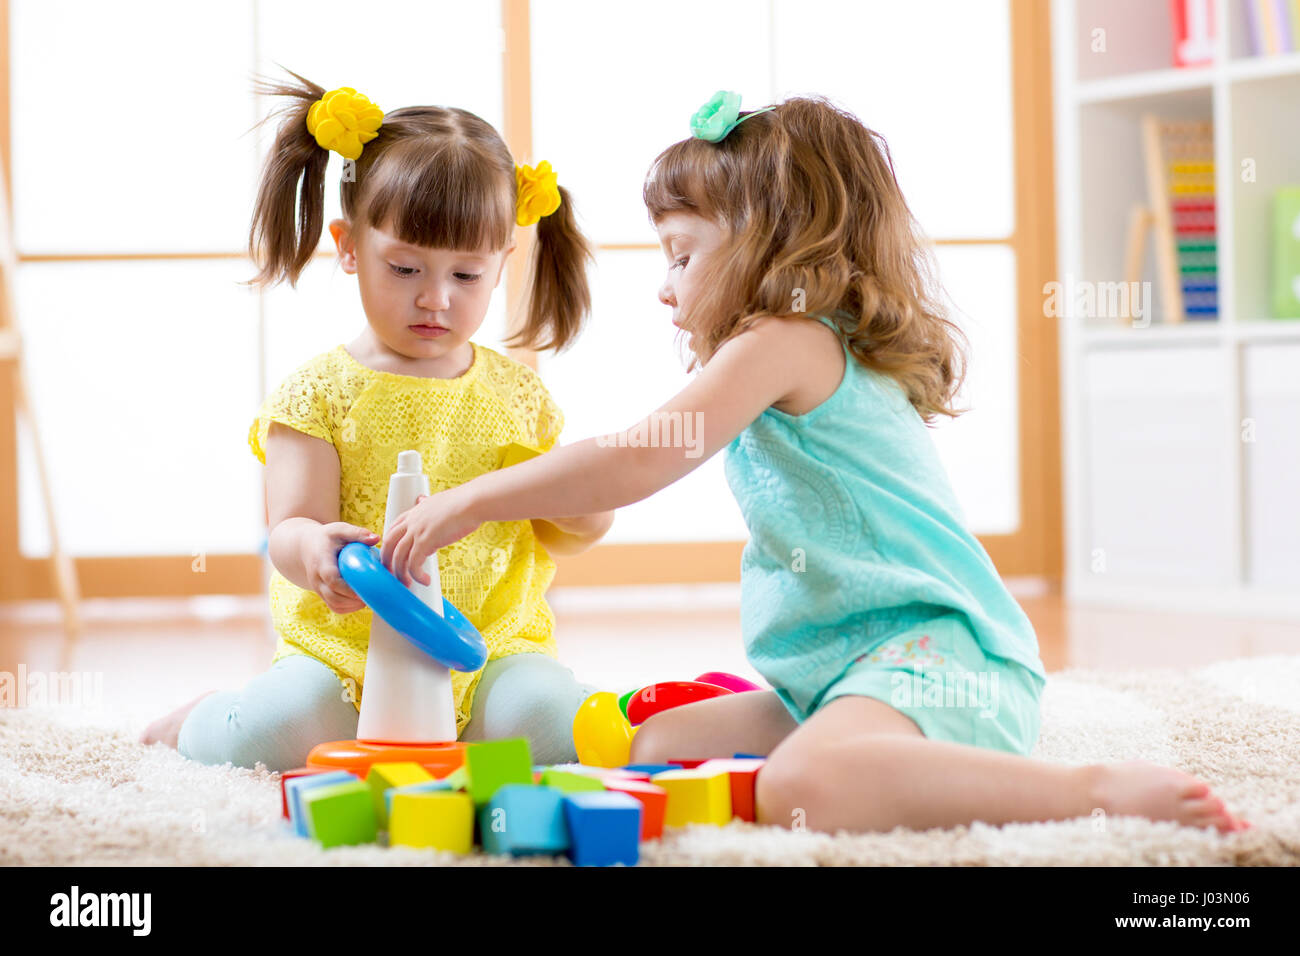 Kinder spielen zusammen. Baby und Kleinkind Kinder spielen mit Blöcken. Pädagogische Spielwaren für Vorschule und Kindergarten Kind. Kleine Mädchen bauen Pyramide Spielzeug daheim oder Kindertagesstätten. Stockfoto